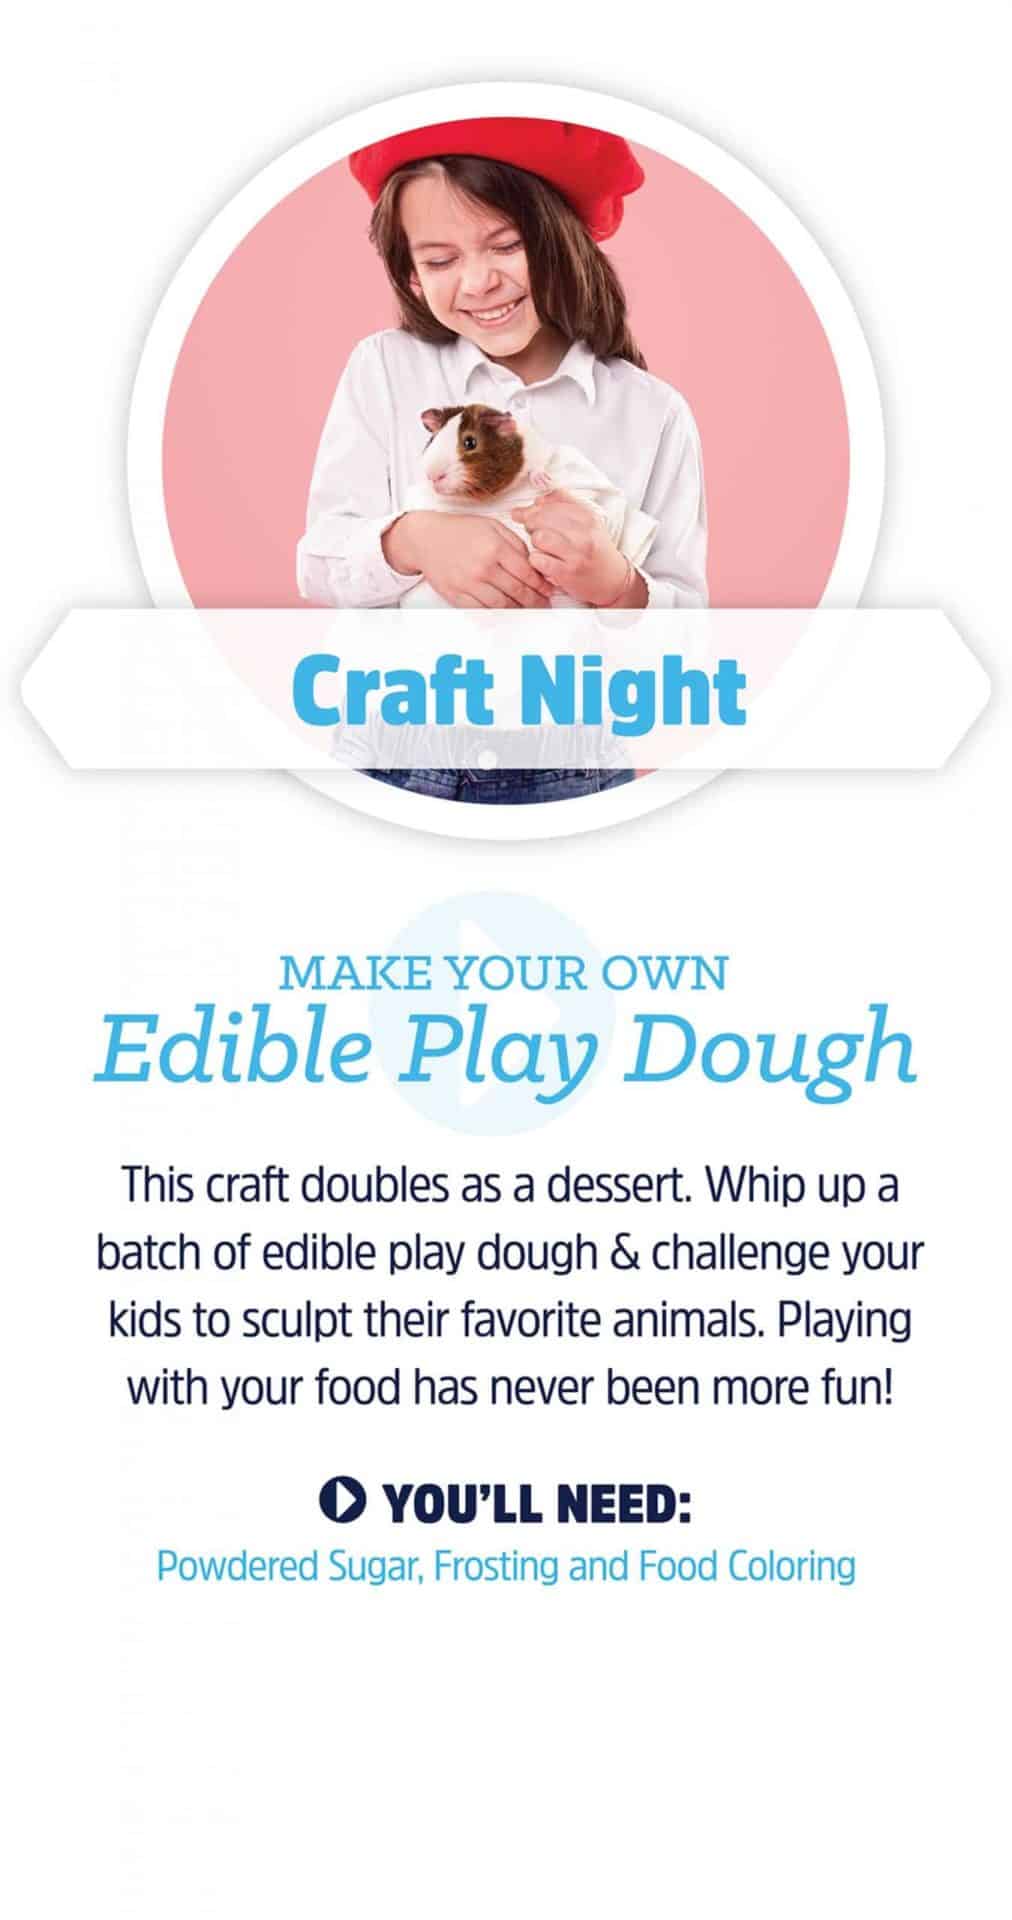 MAKE YOUR OWN Edible Play Dough